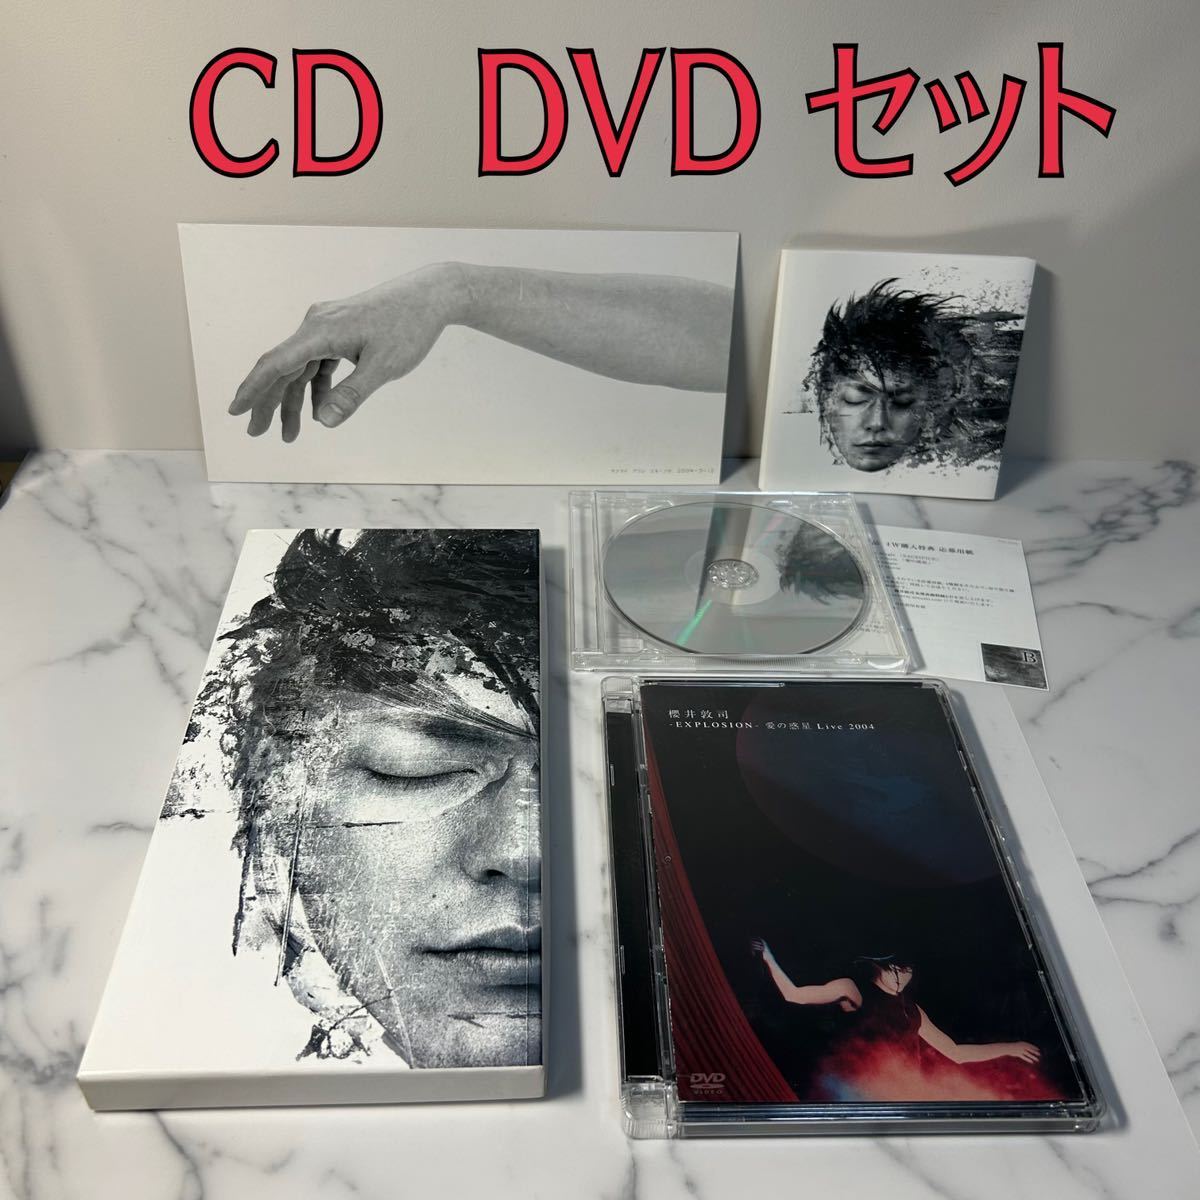 櫻井敦司 愛の惑星 初回盤 CD EXPLOSION 愛の惑星 Live 2004 DVD - CD